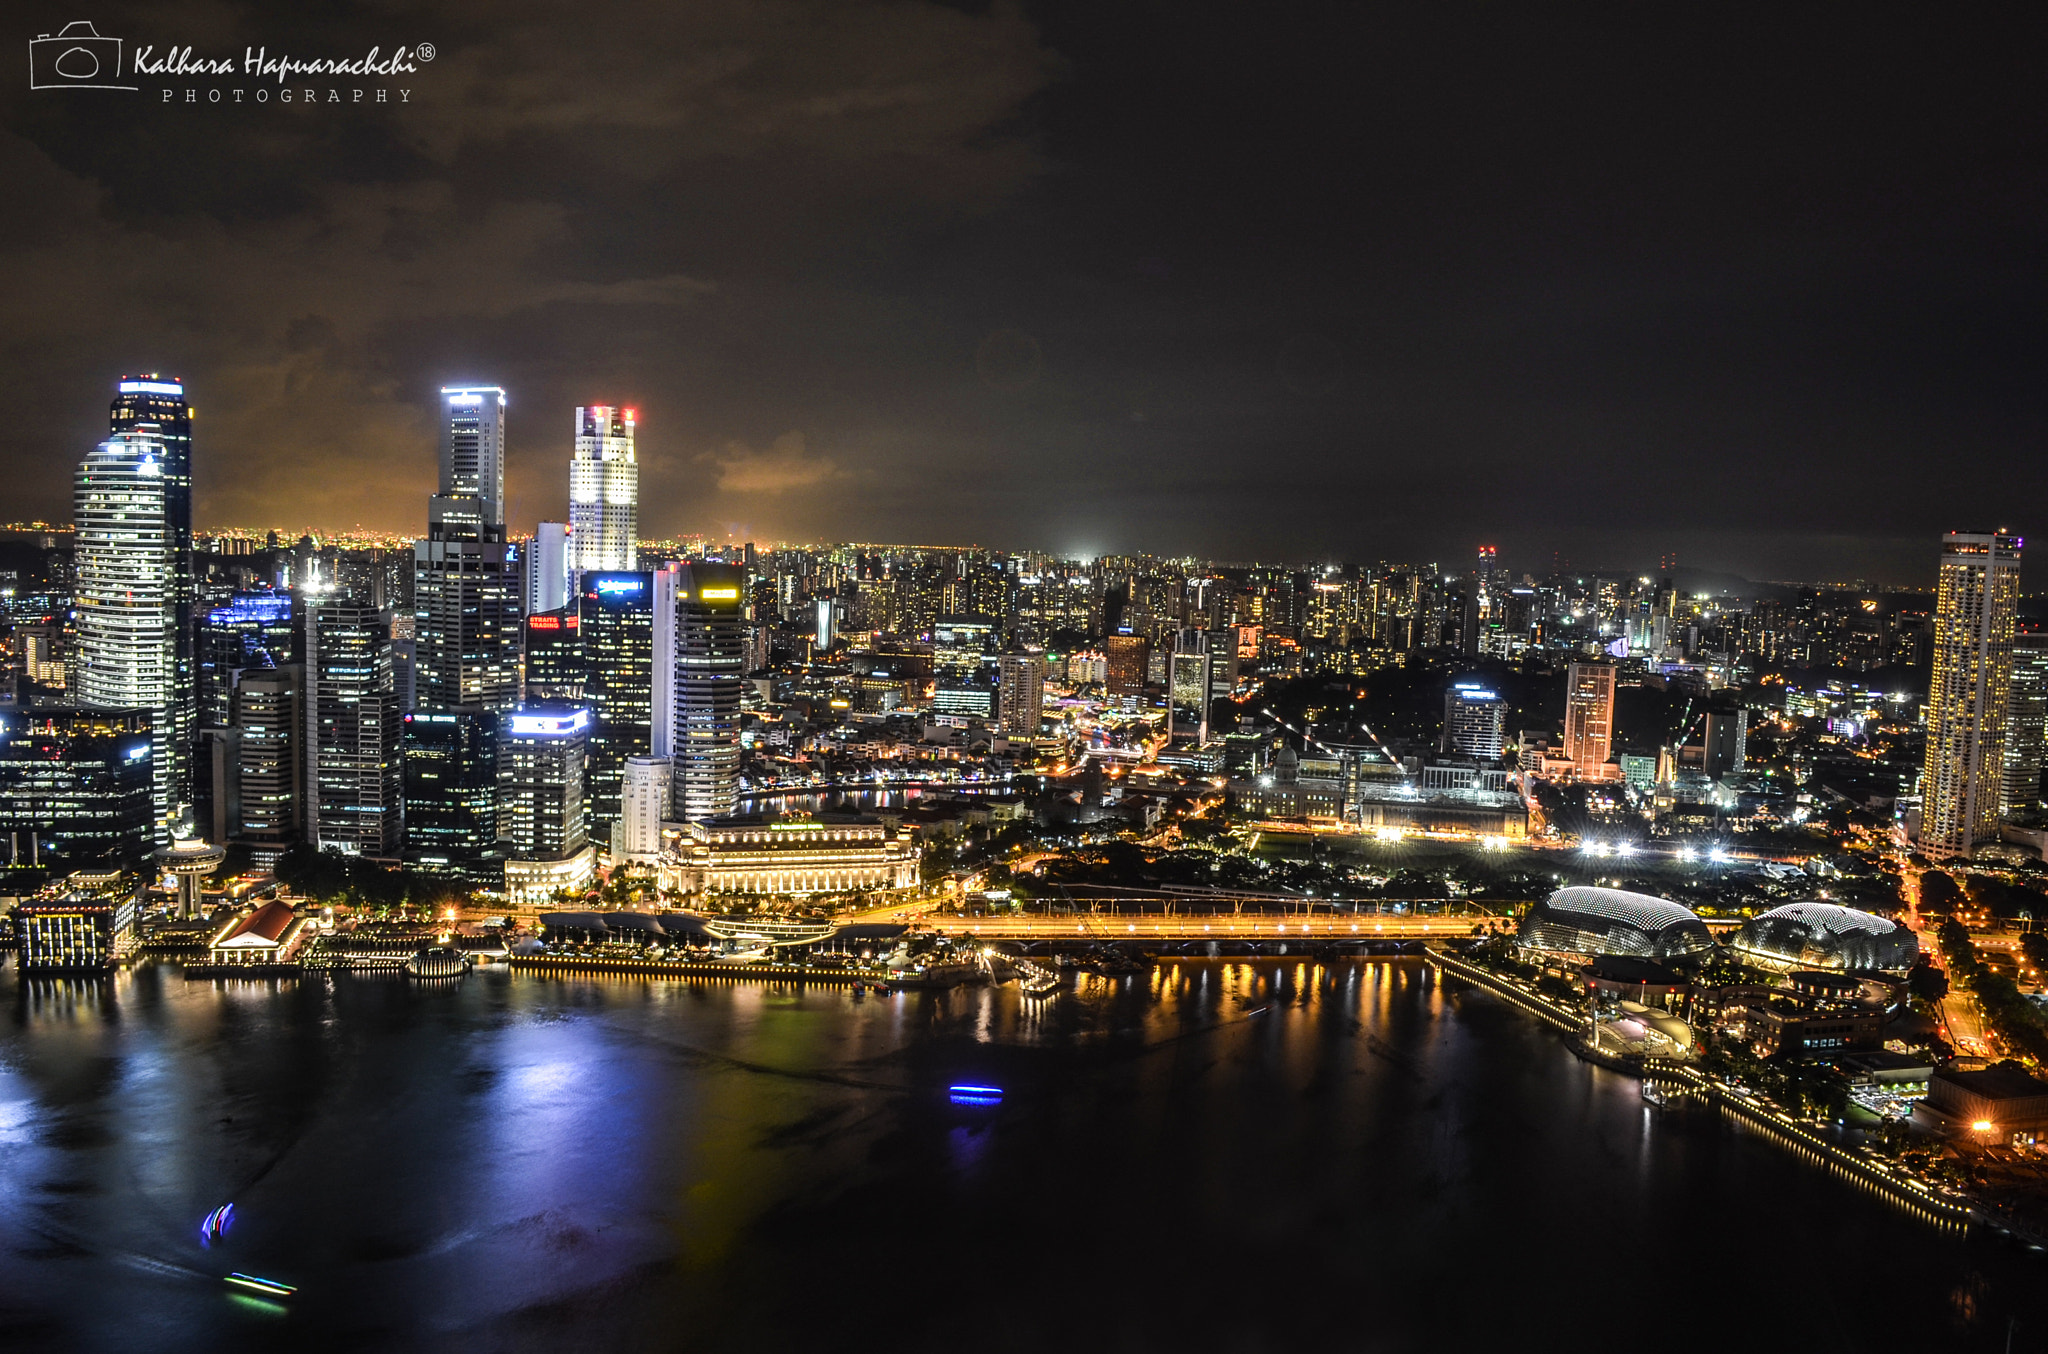 Singapore City skyline at night